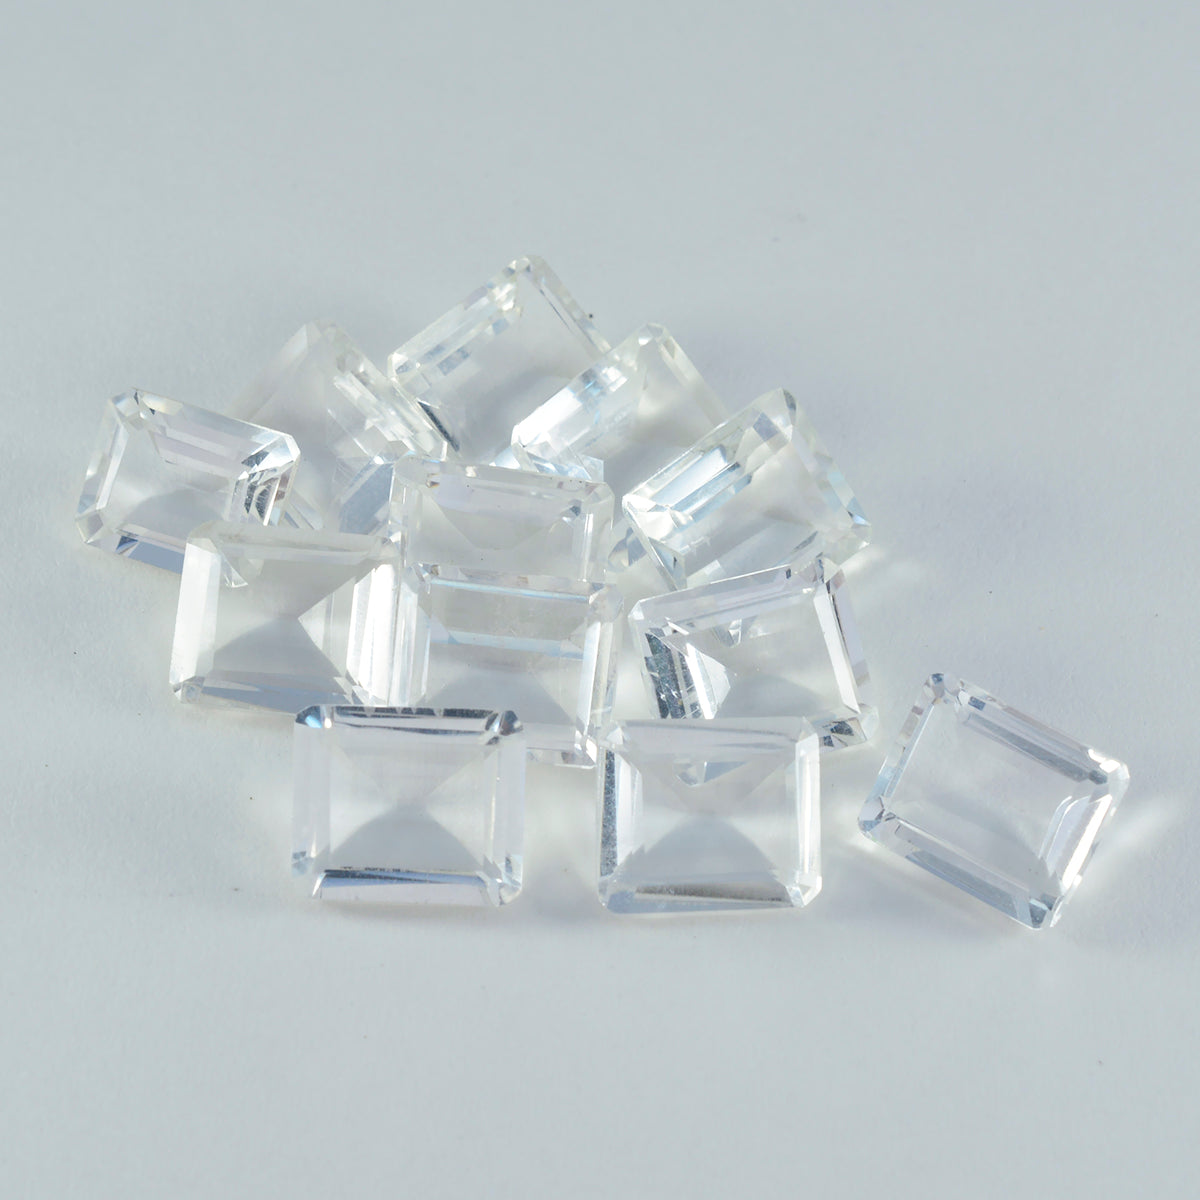 riyogems 1 шт., белые кристаллы кварца, граненые 5x7 мм, восьмиугольная форма, фантастическое качество, россыпь драгоценных камней